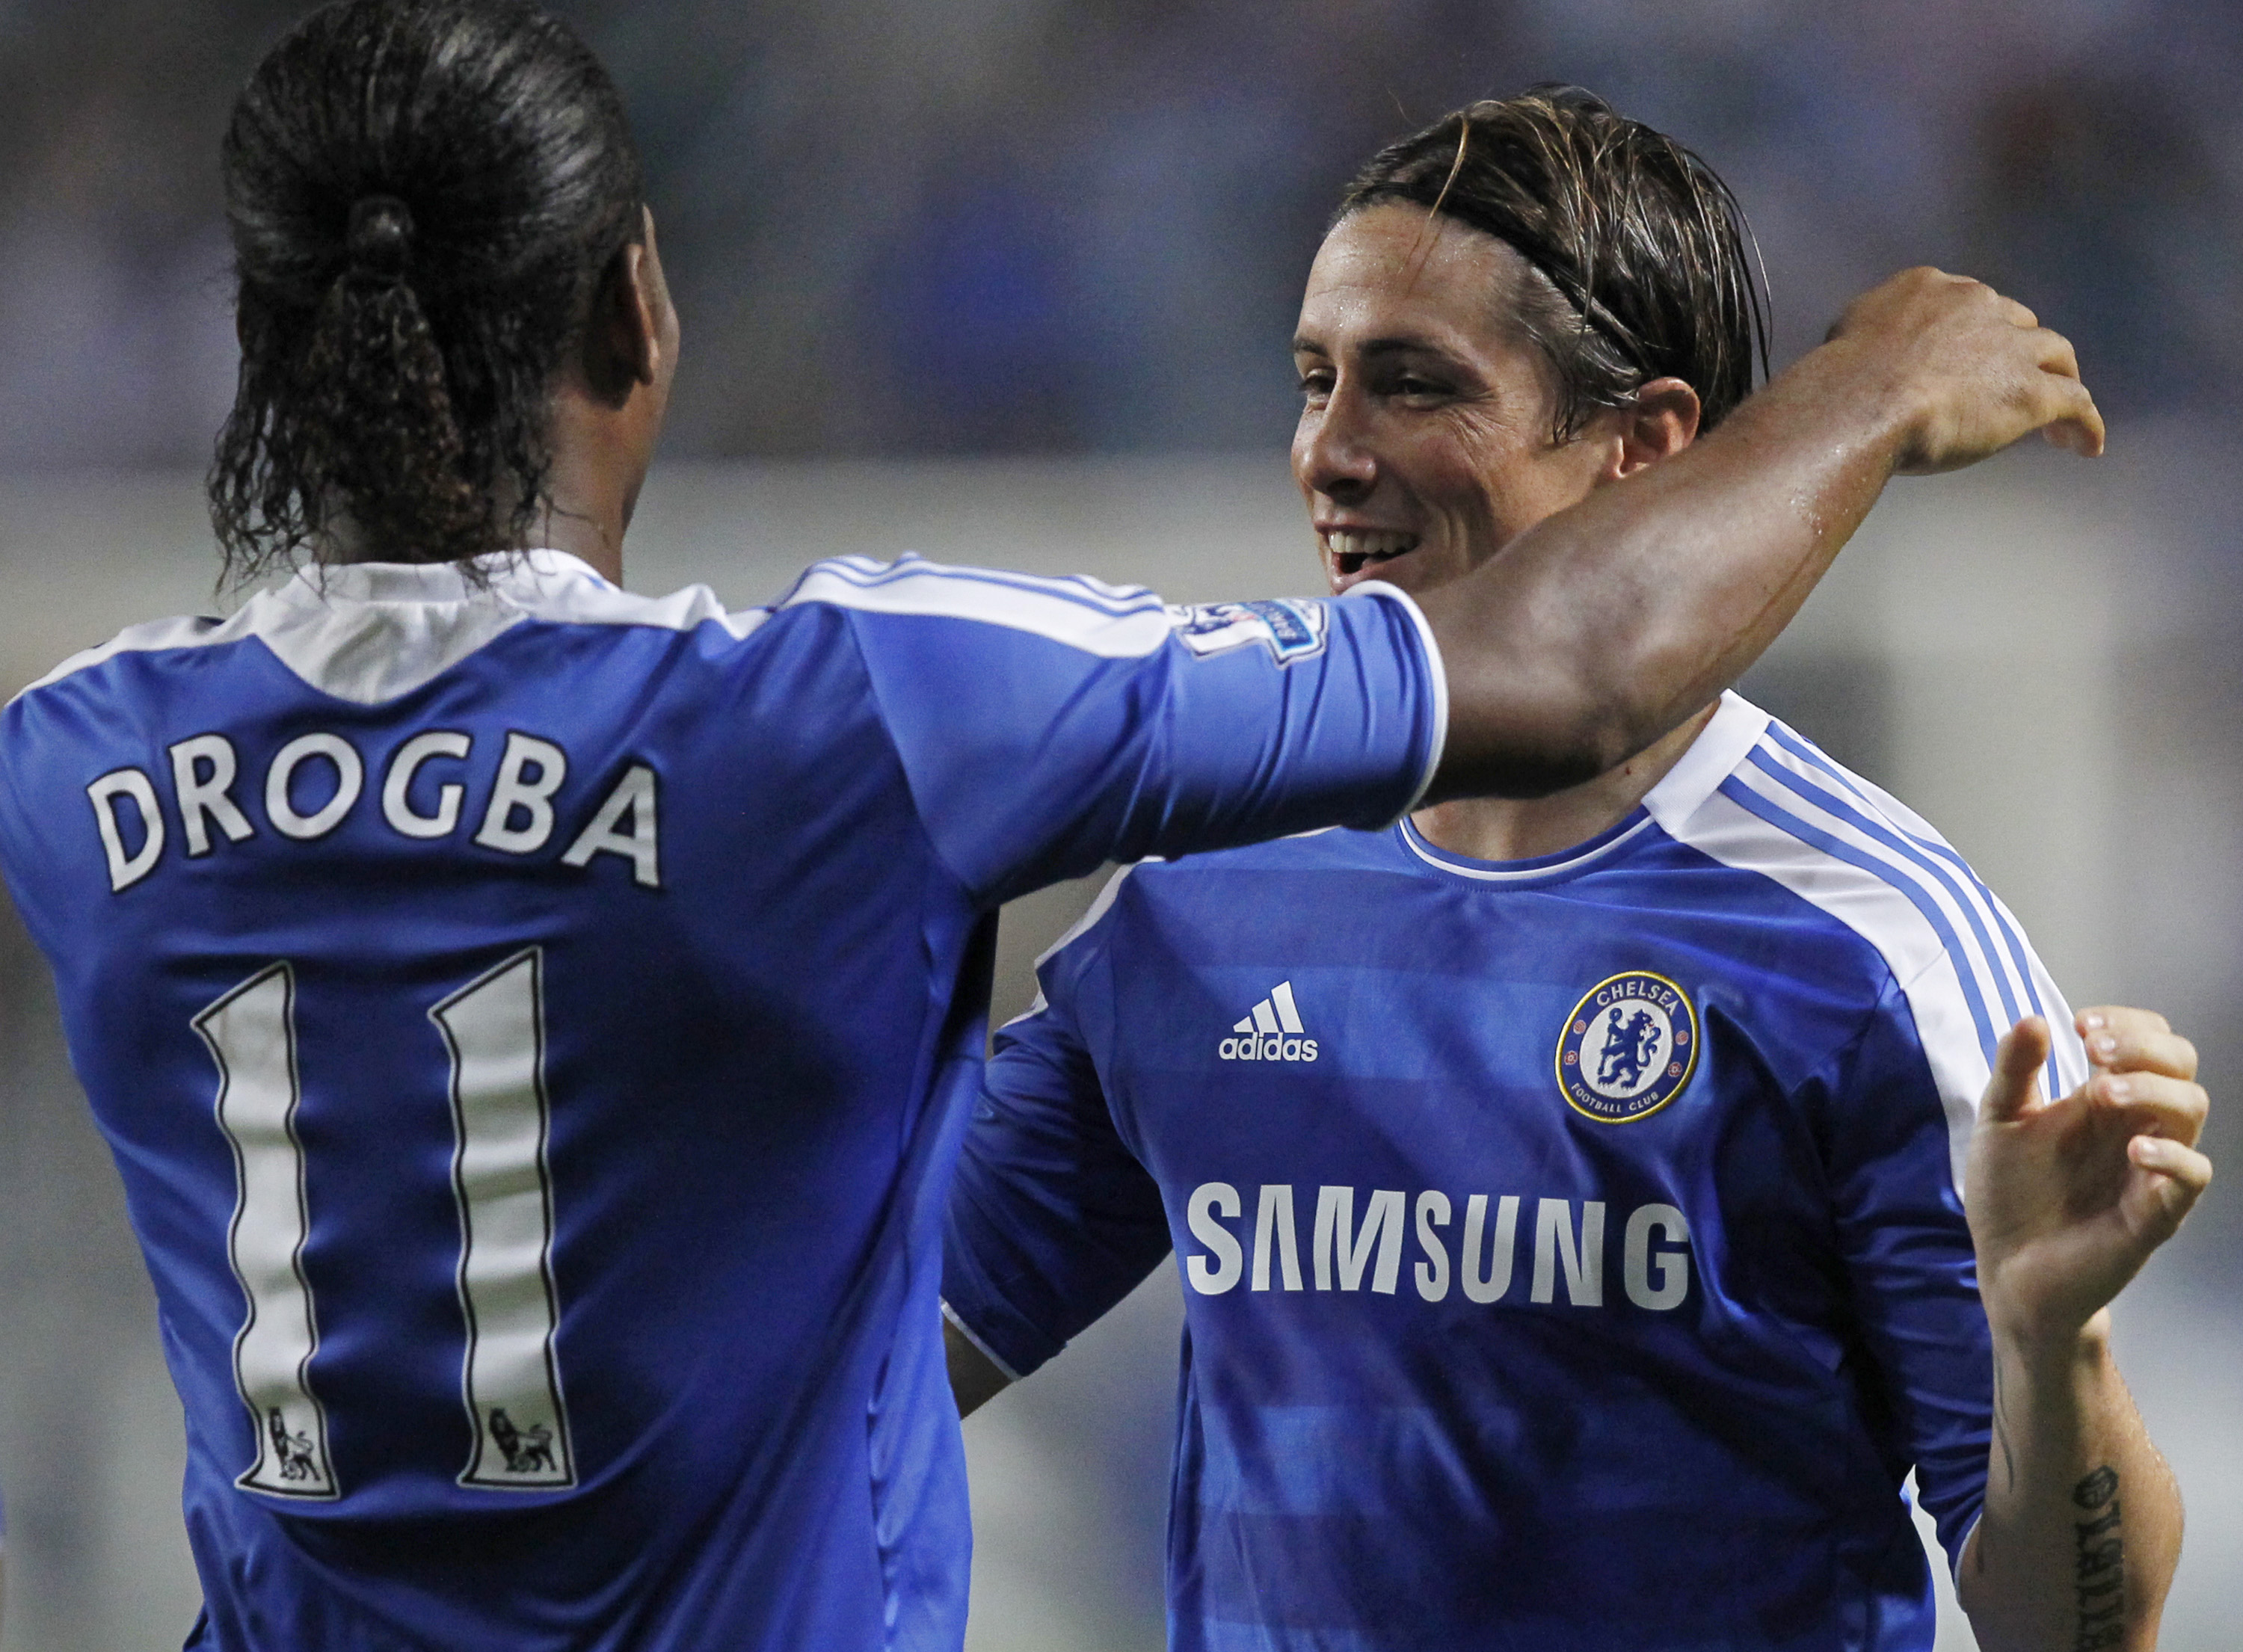 Enligt källor till The Mirror har Chelsea valt bort Didier Drogba för att satsa på Torres. 